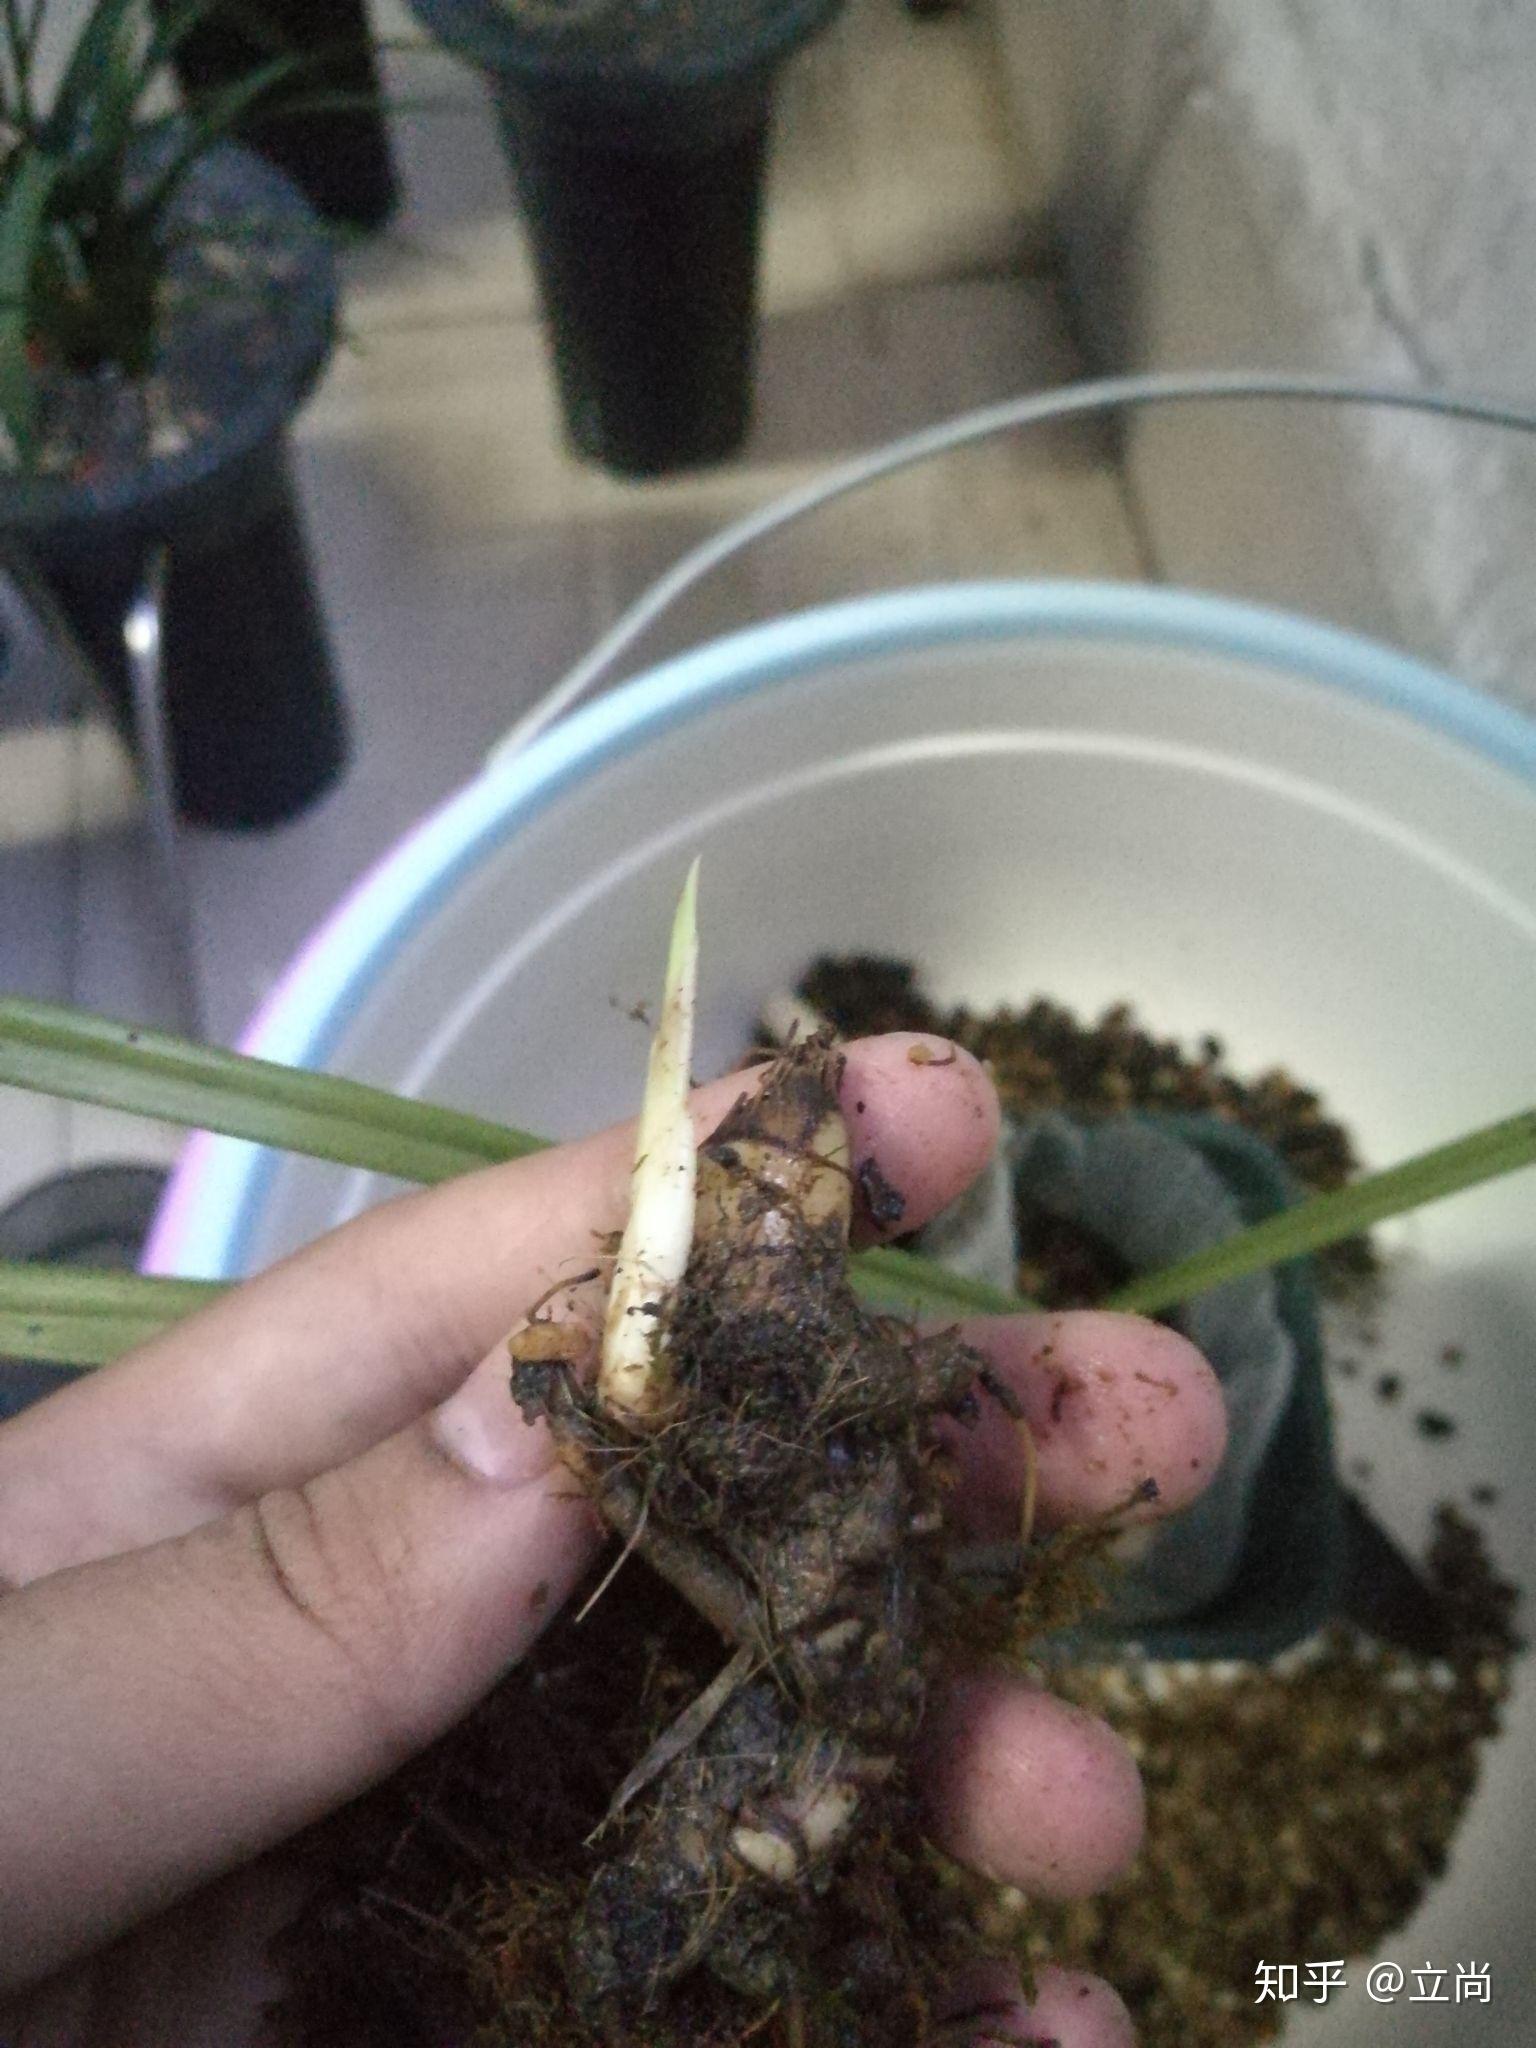 兰花根与茎的部位有蒜头状的是什么兰花?